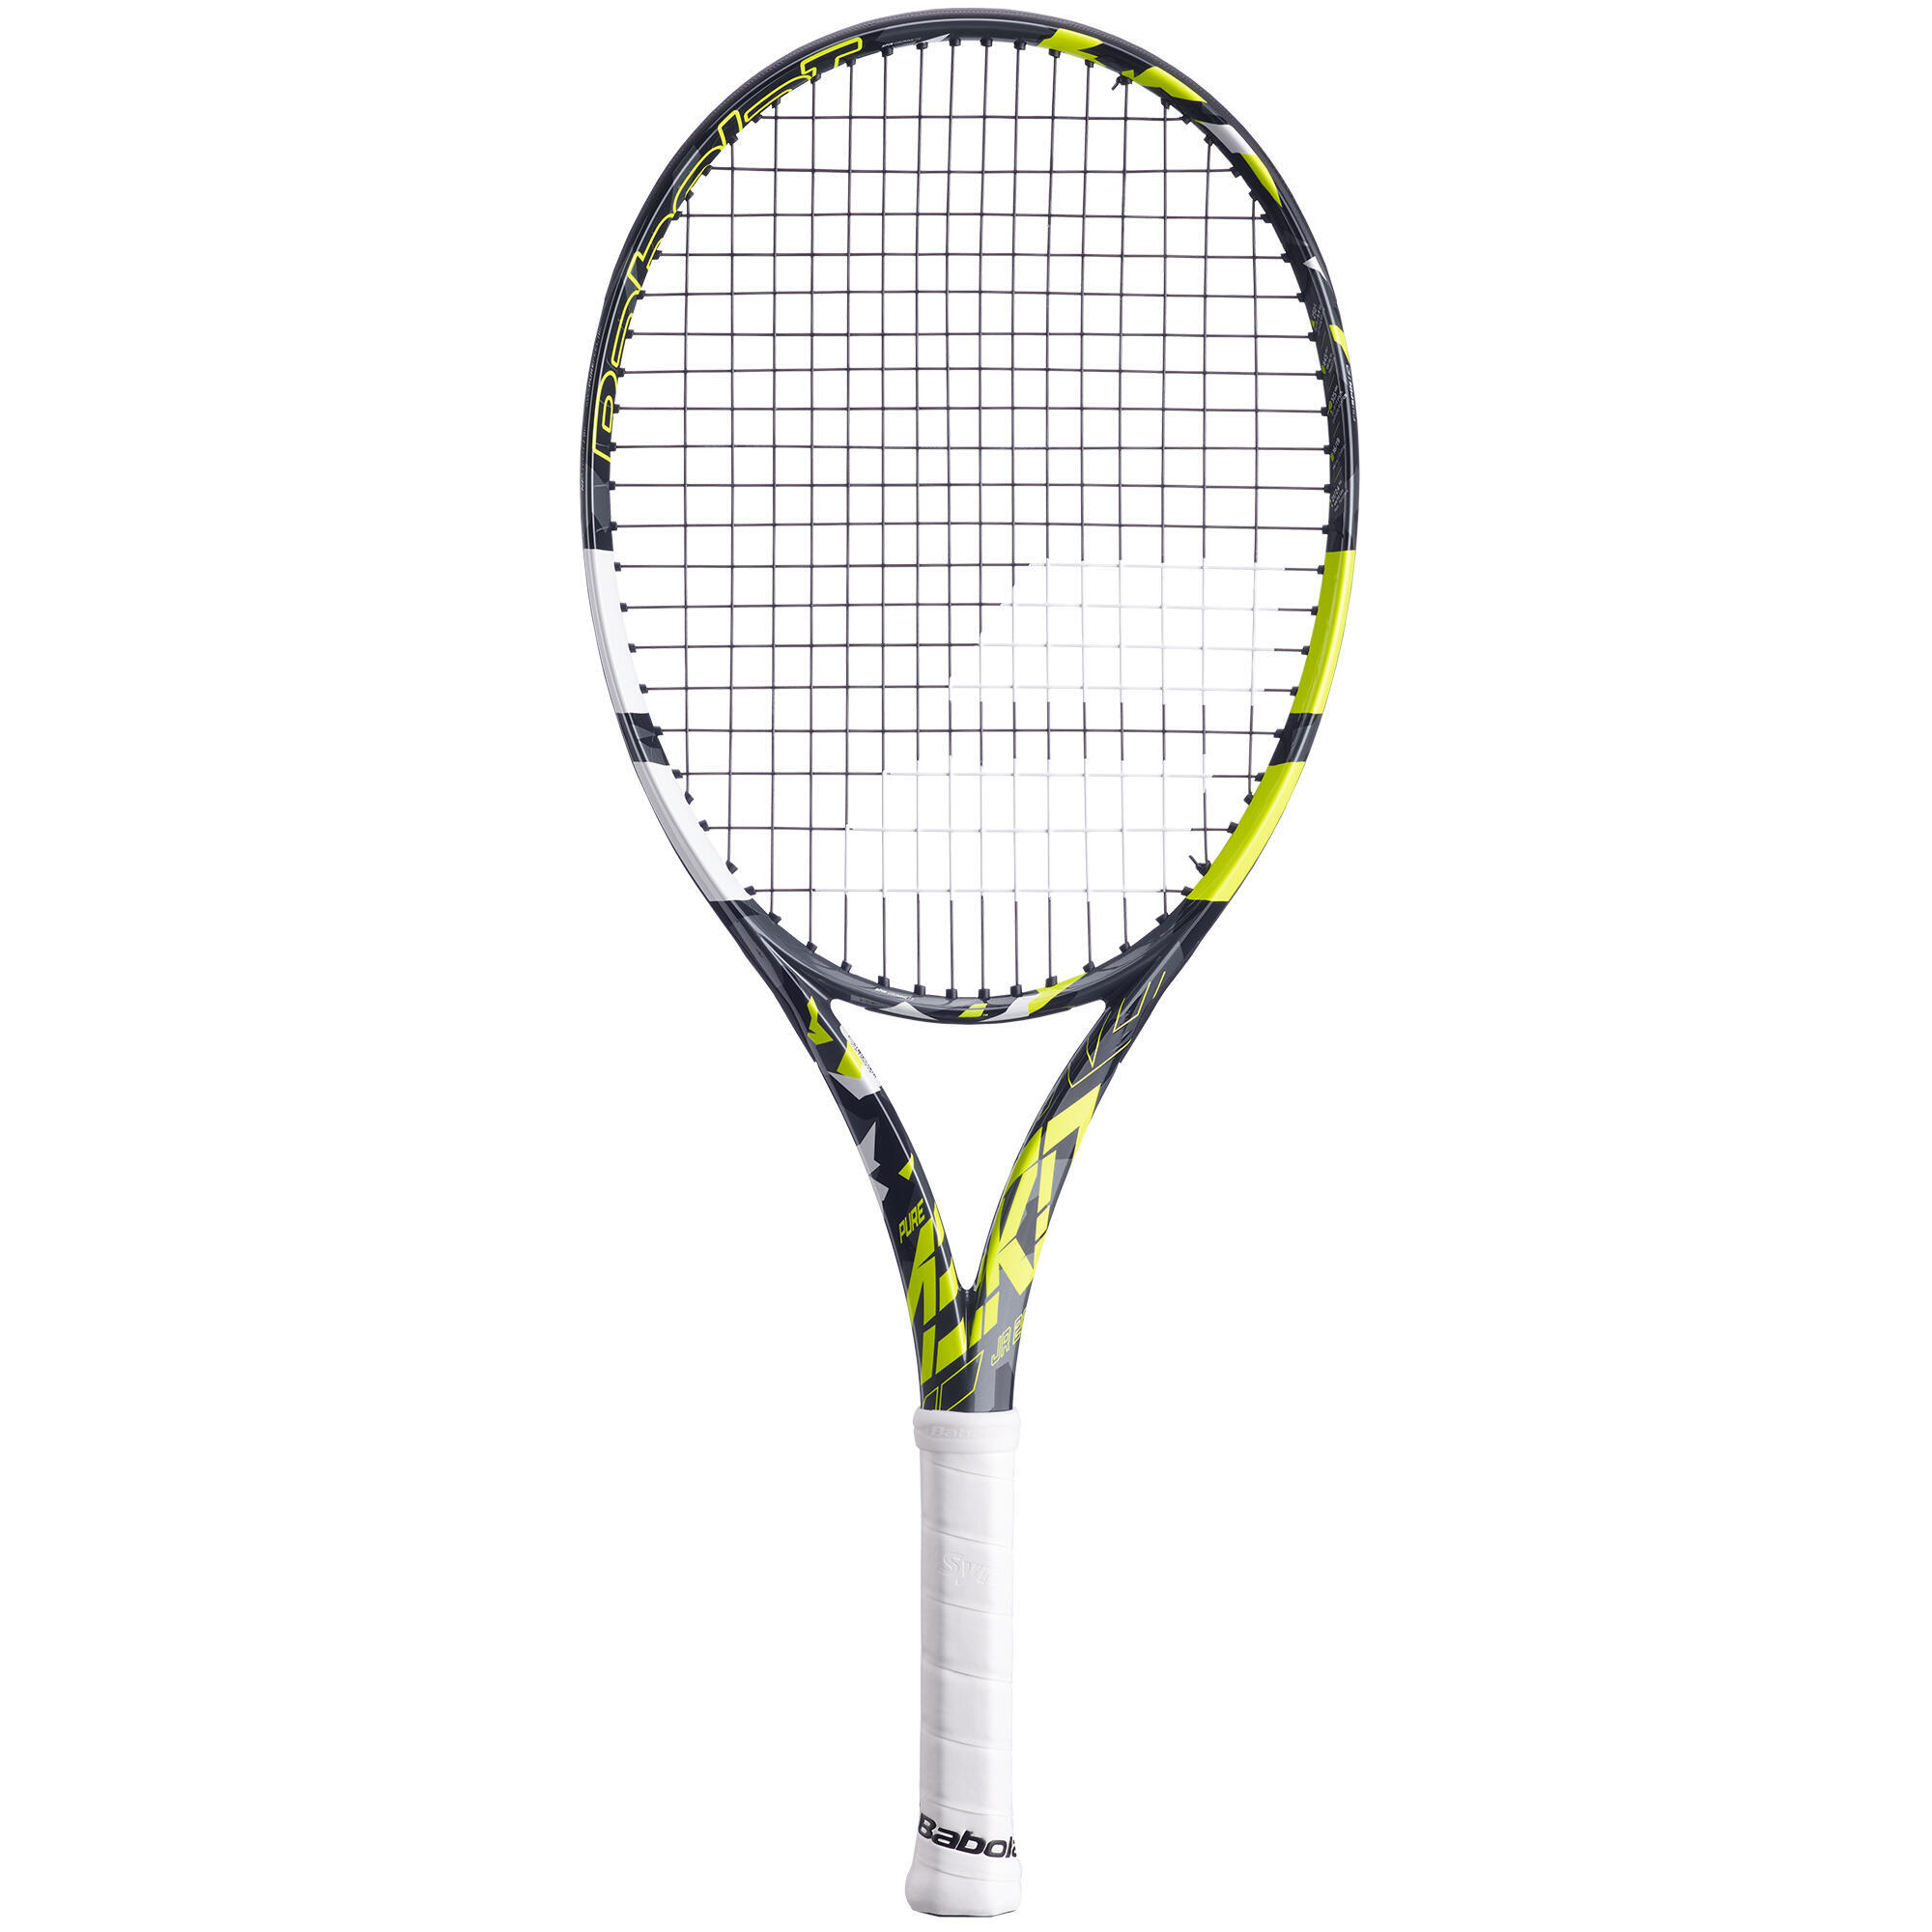 Детская теннисная ракетка Pure Aero 26 дюймов, черная/желтая BABOLAT